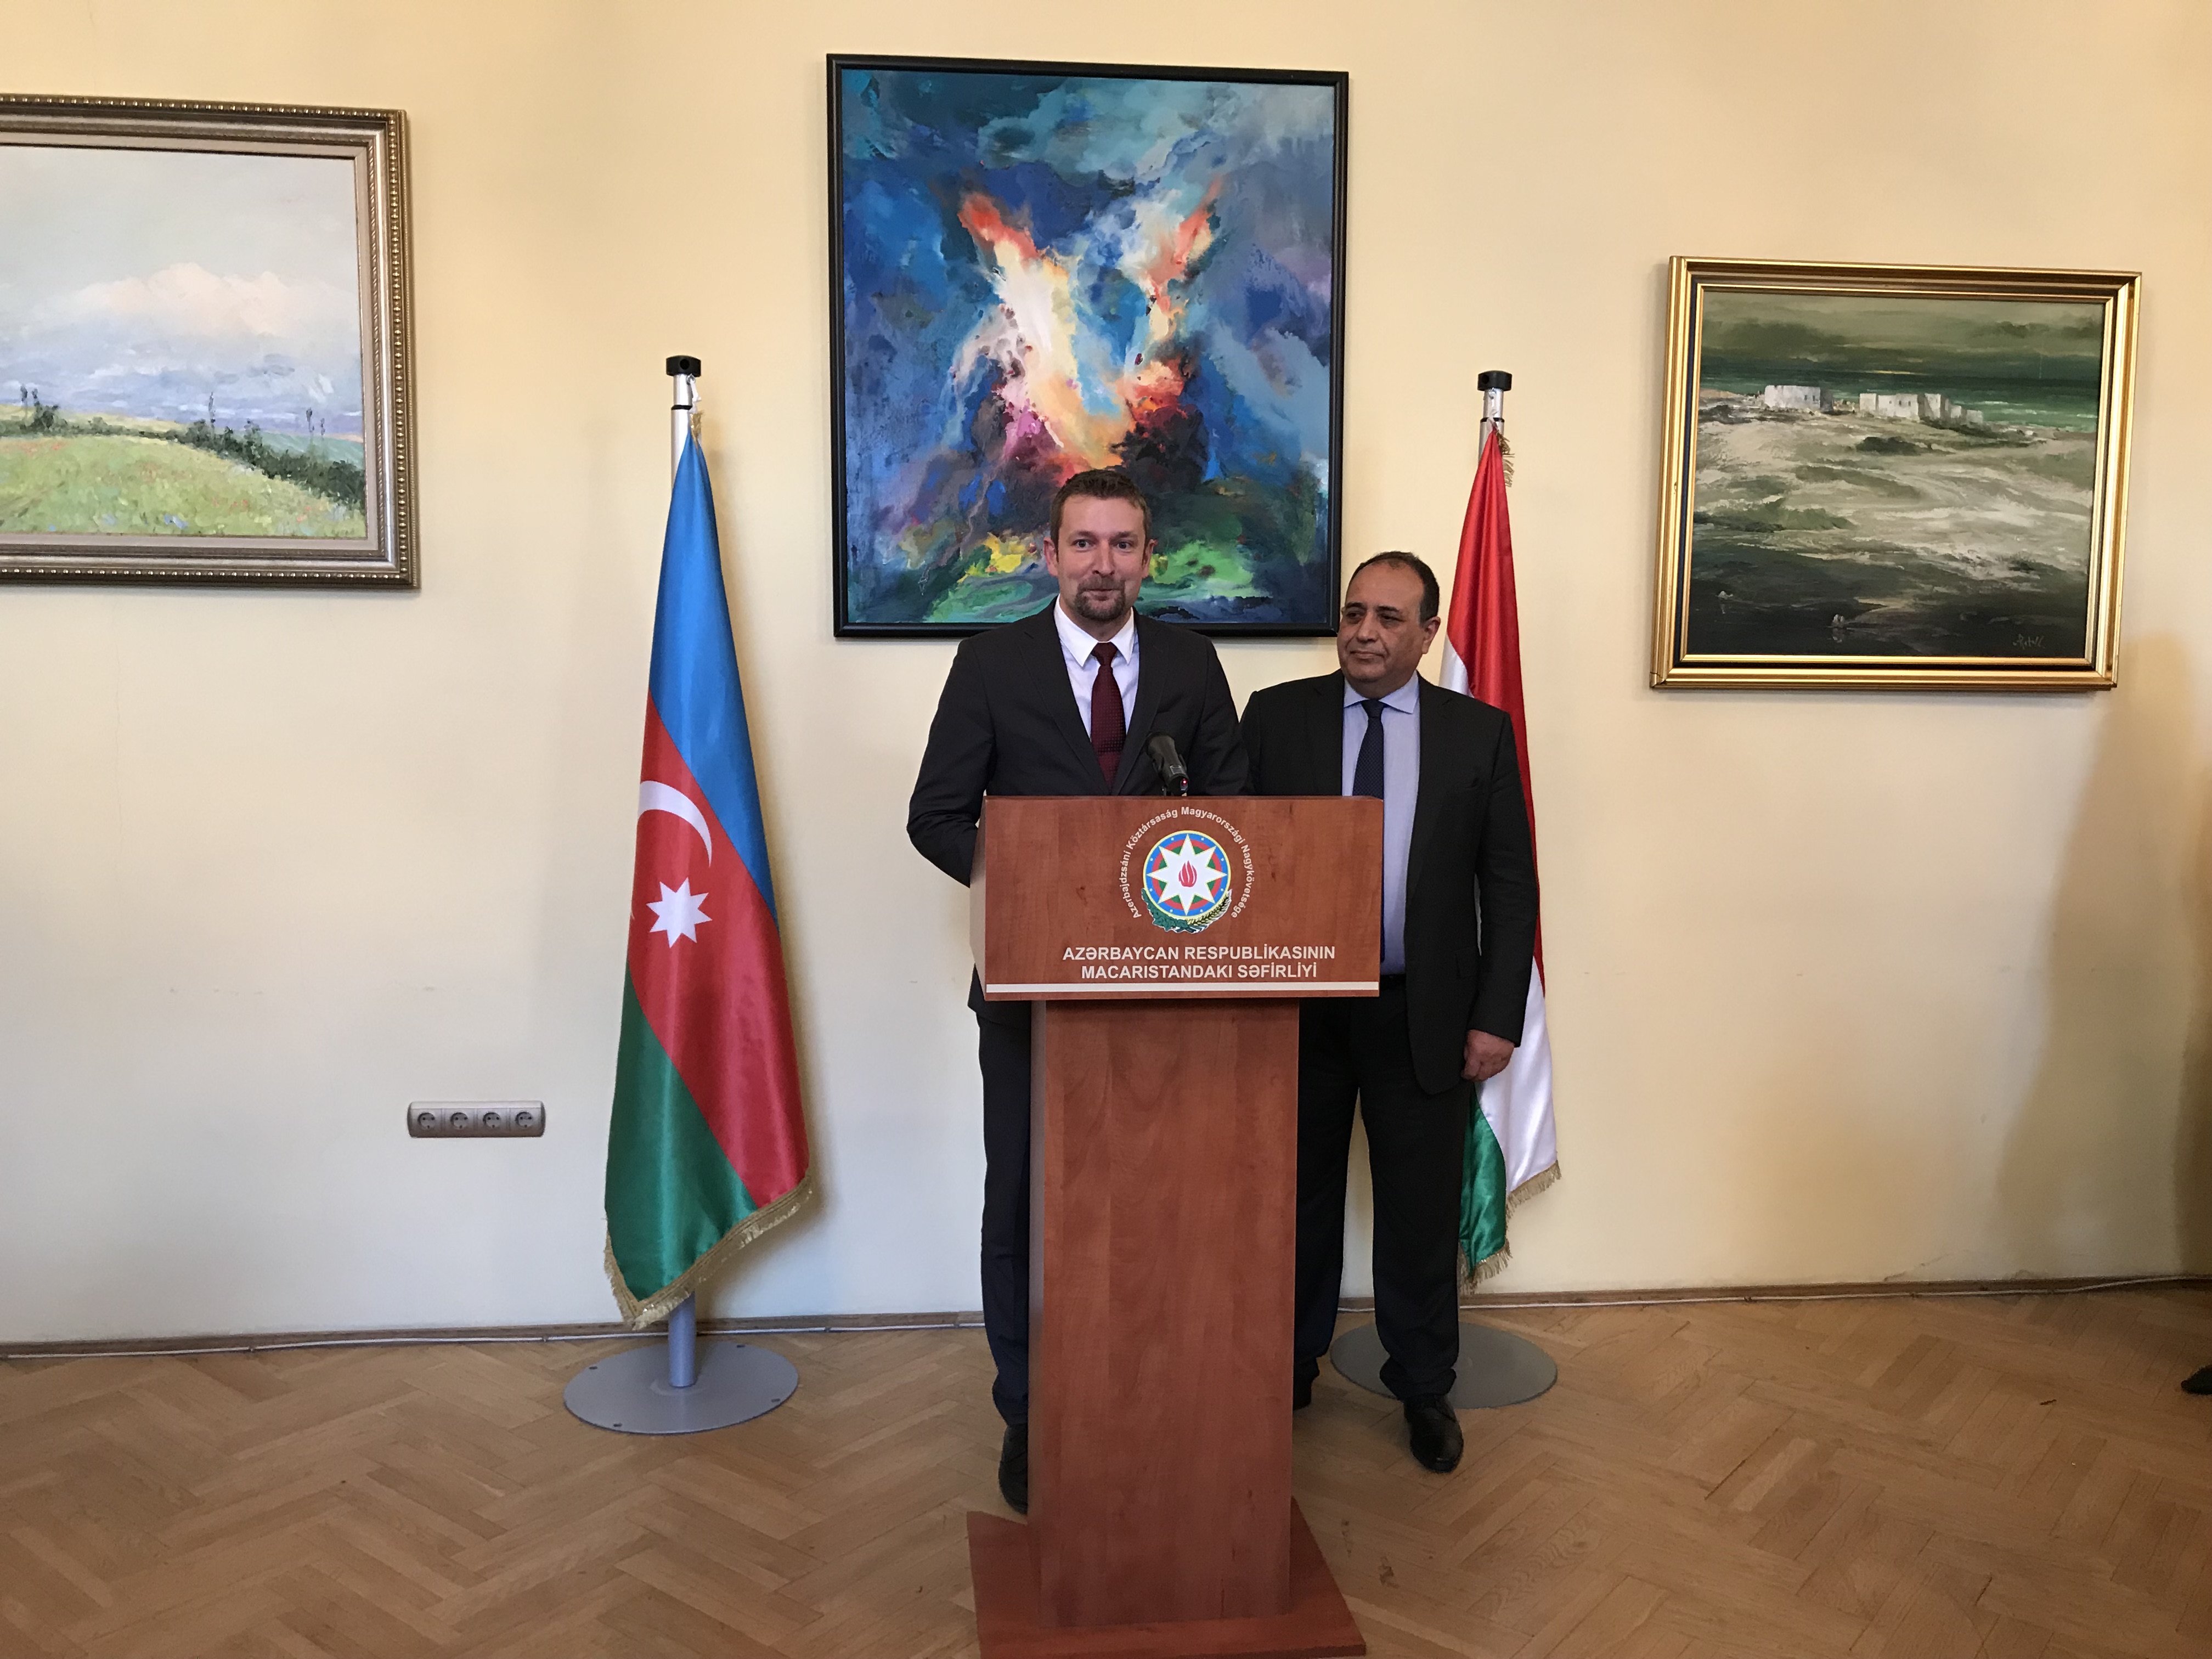 उप राज्य सचिव बरनी अज़रबैजानी दूतावास के स्वागत समारोह में राजनयिकों को संबोधित करते हैं